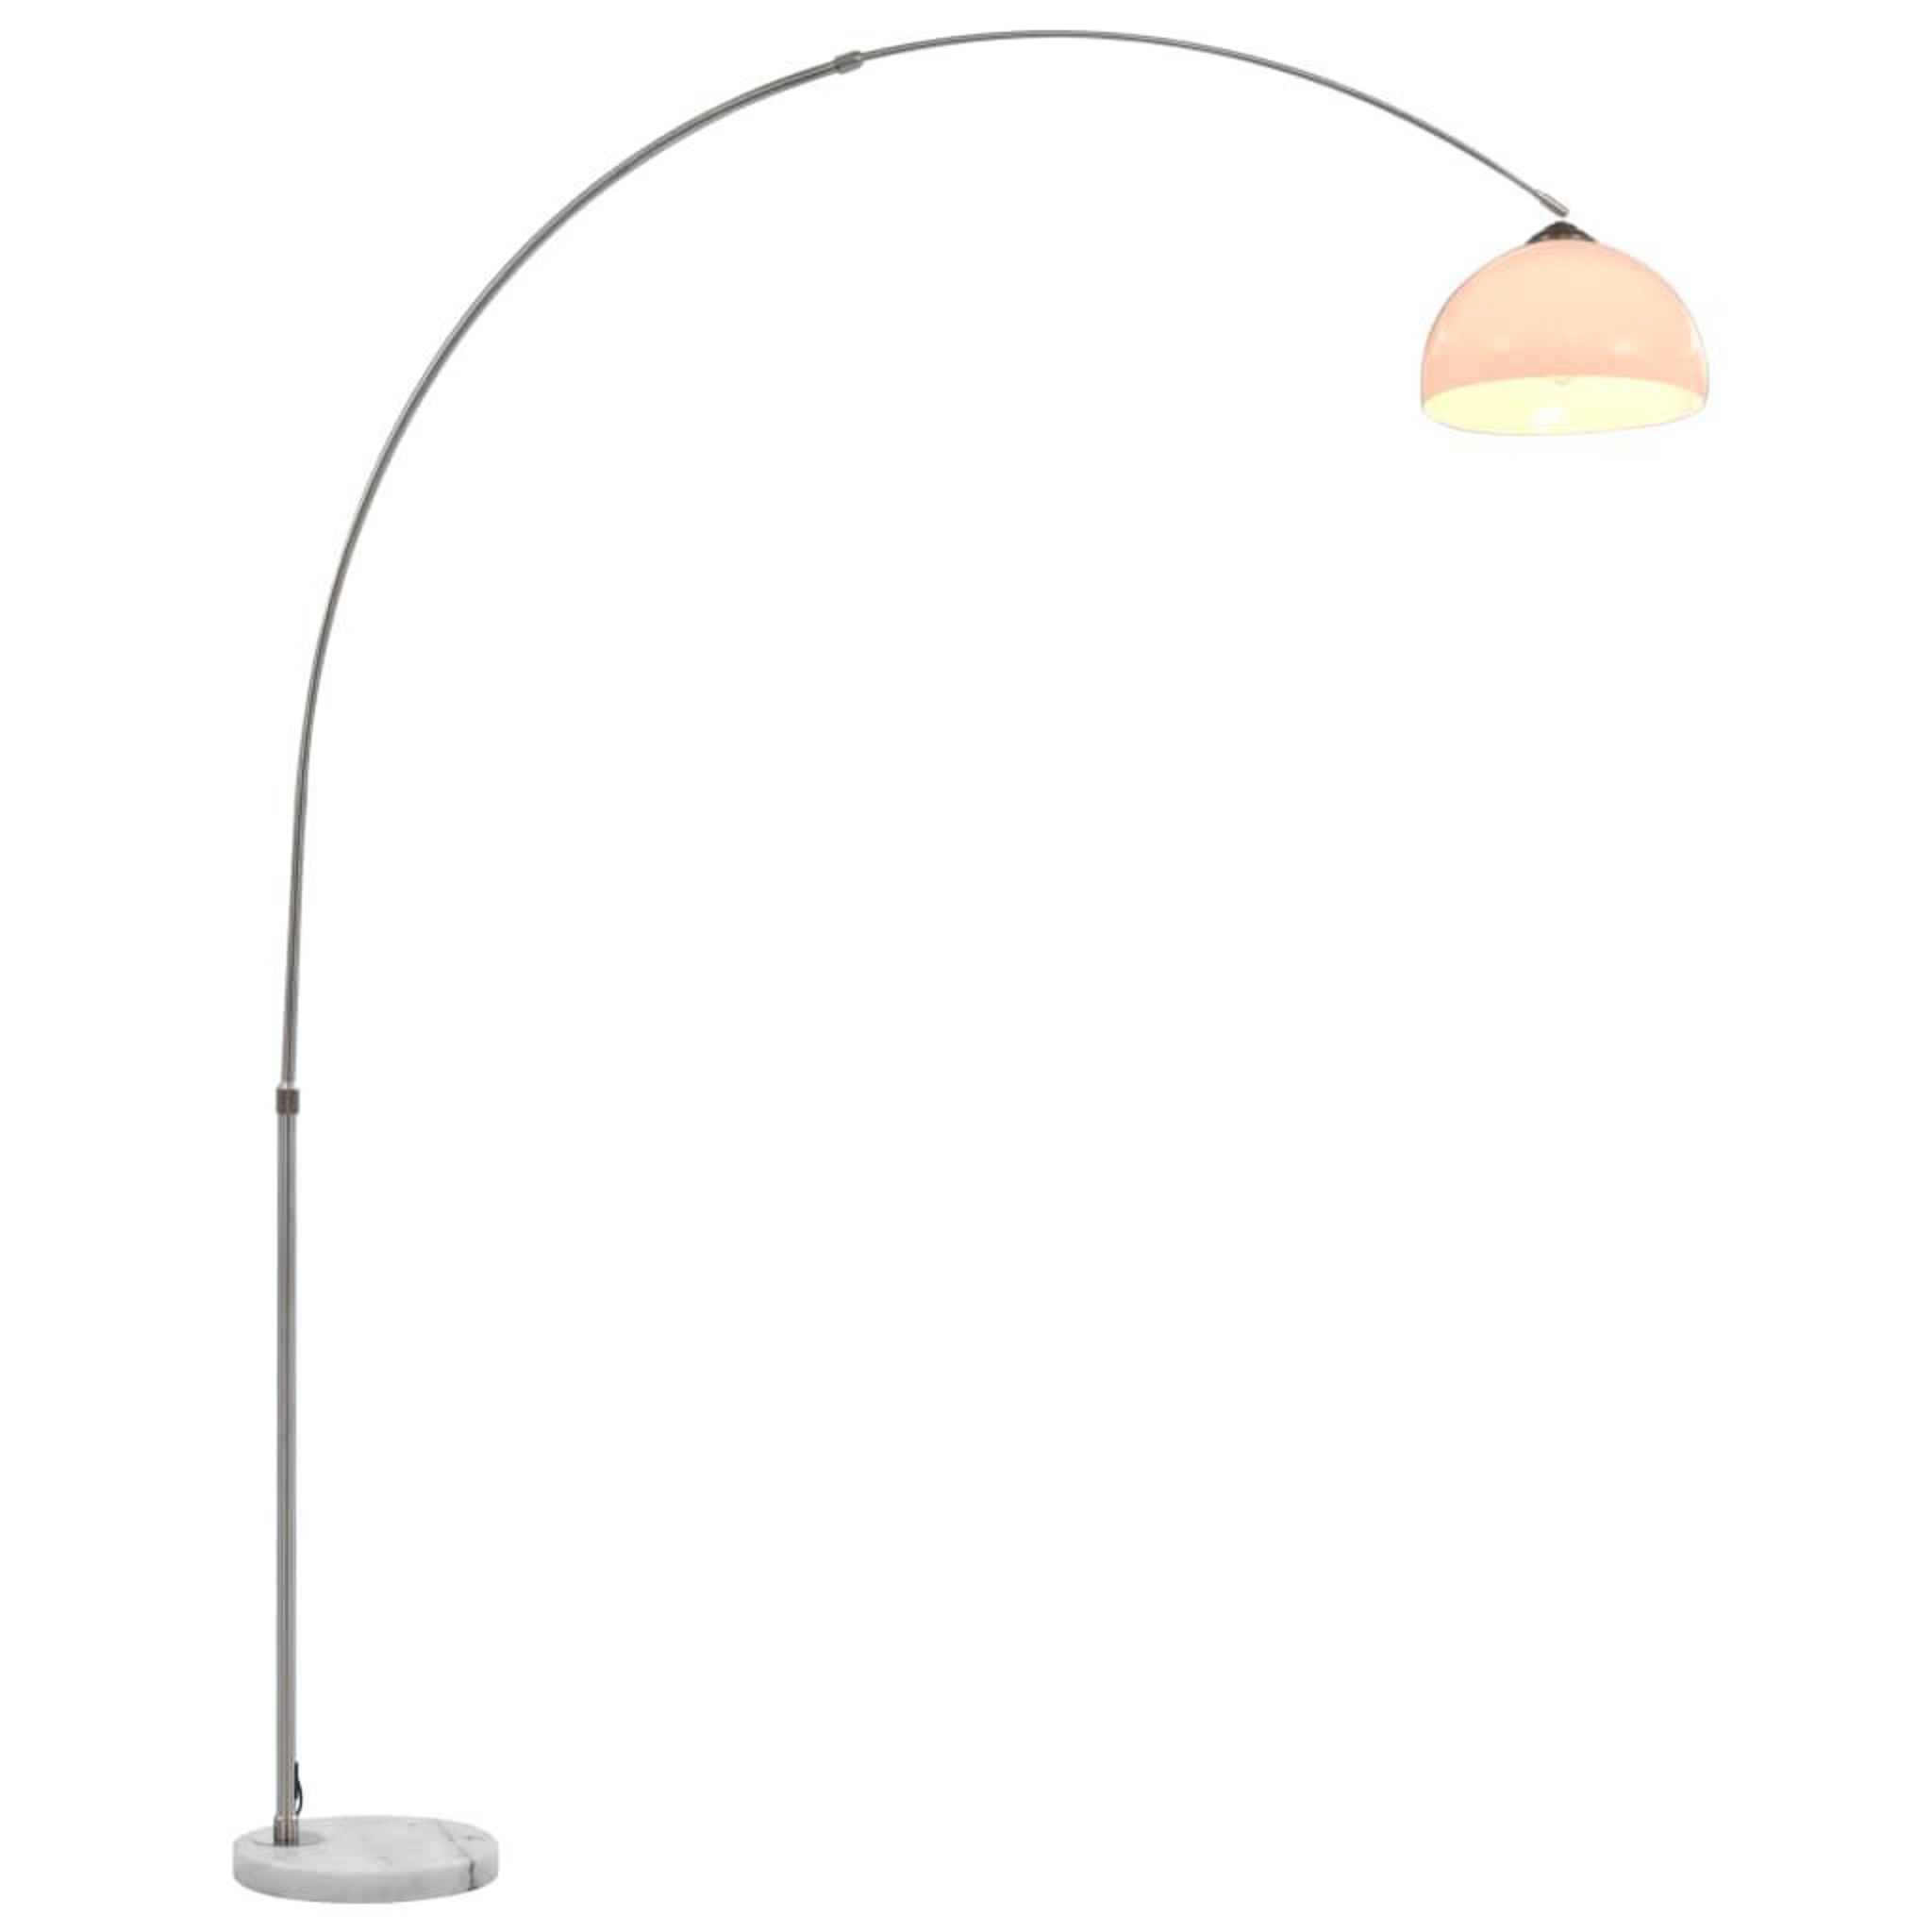 HOMCOM Lampe lampadaire à arc salon courbée - Lampe arceau moderne en métal  - Lampadaire sur pied métal lin noir pas cher 